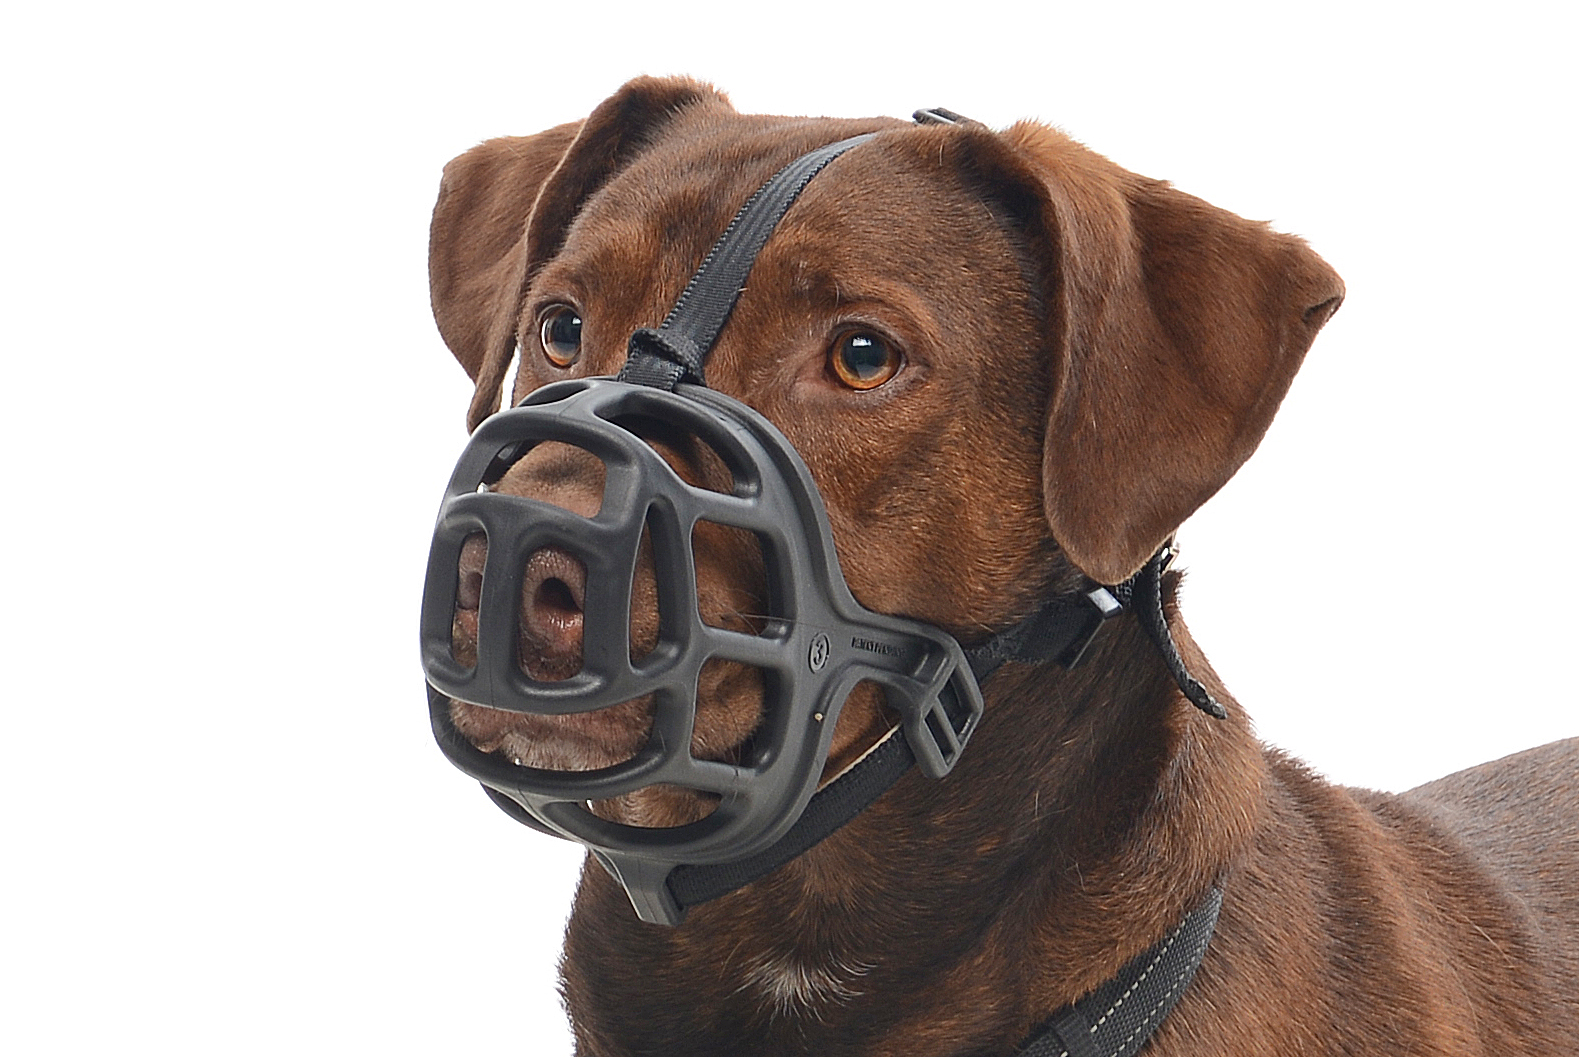 BUSTER Extreme dog muzzle, size 6